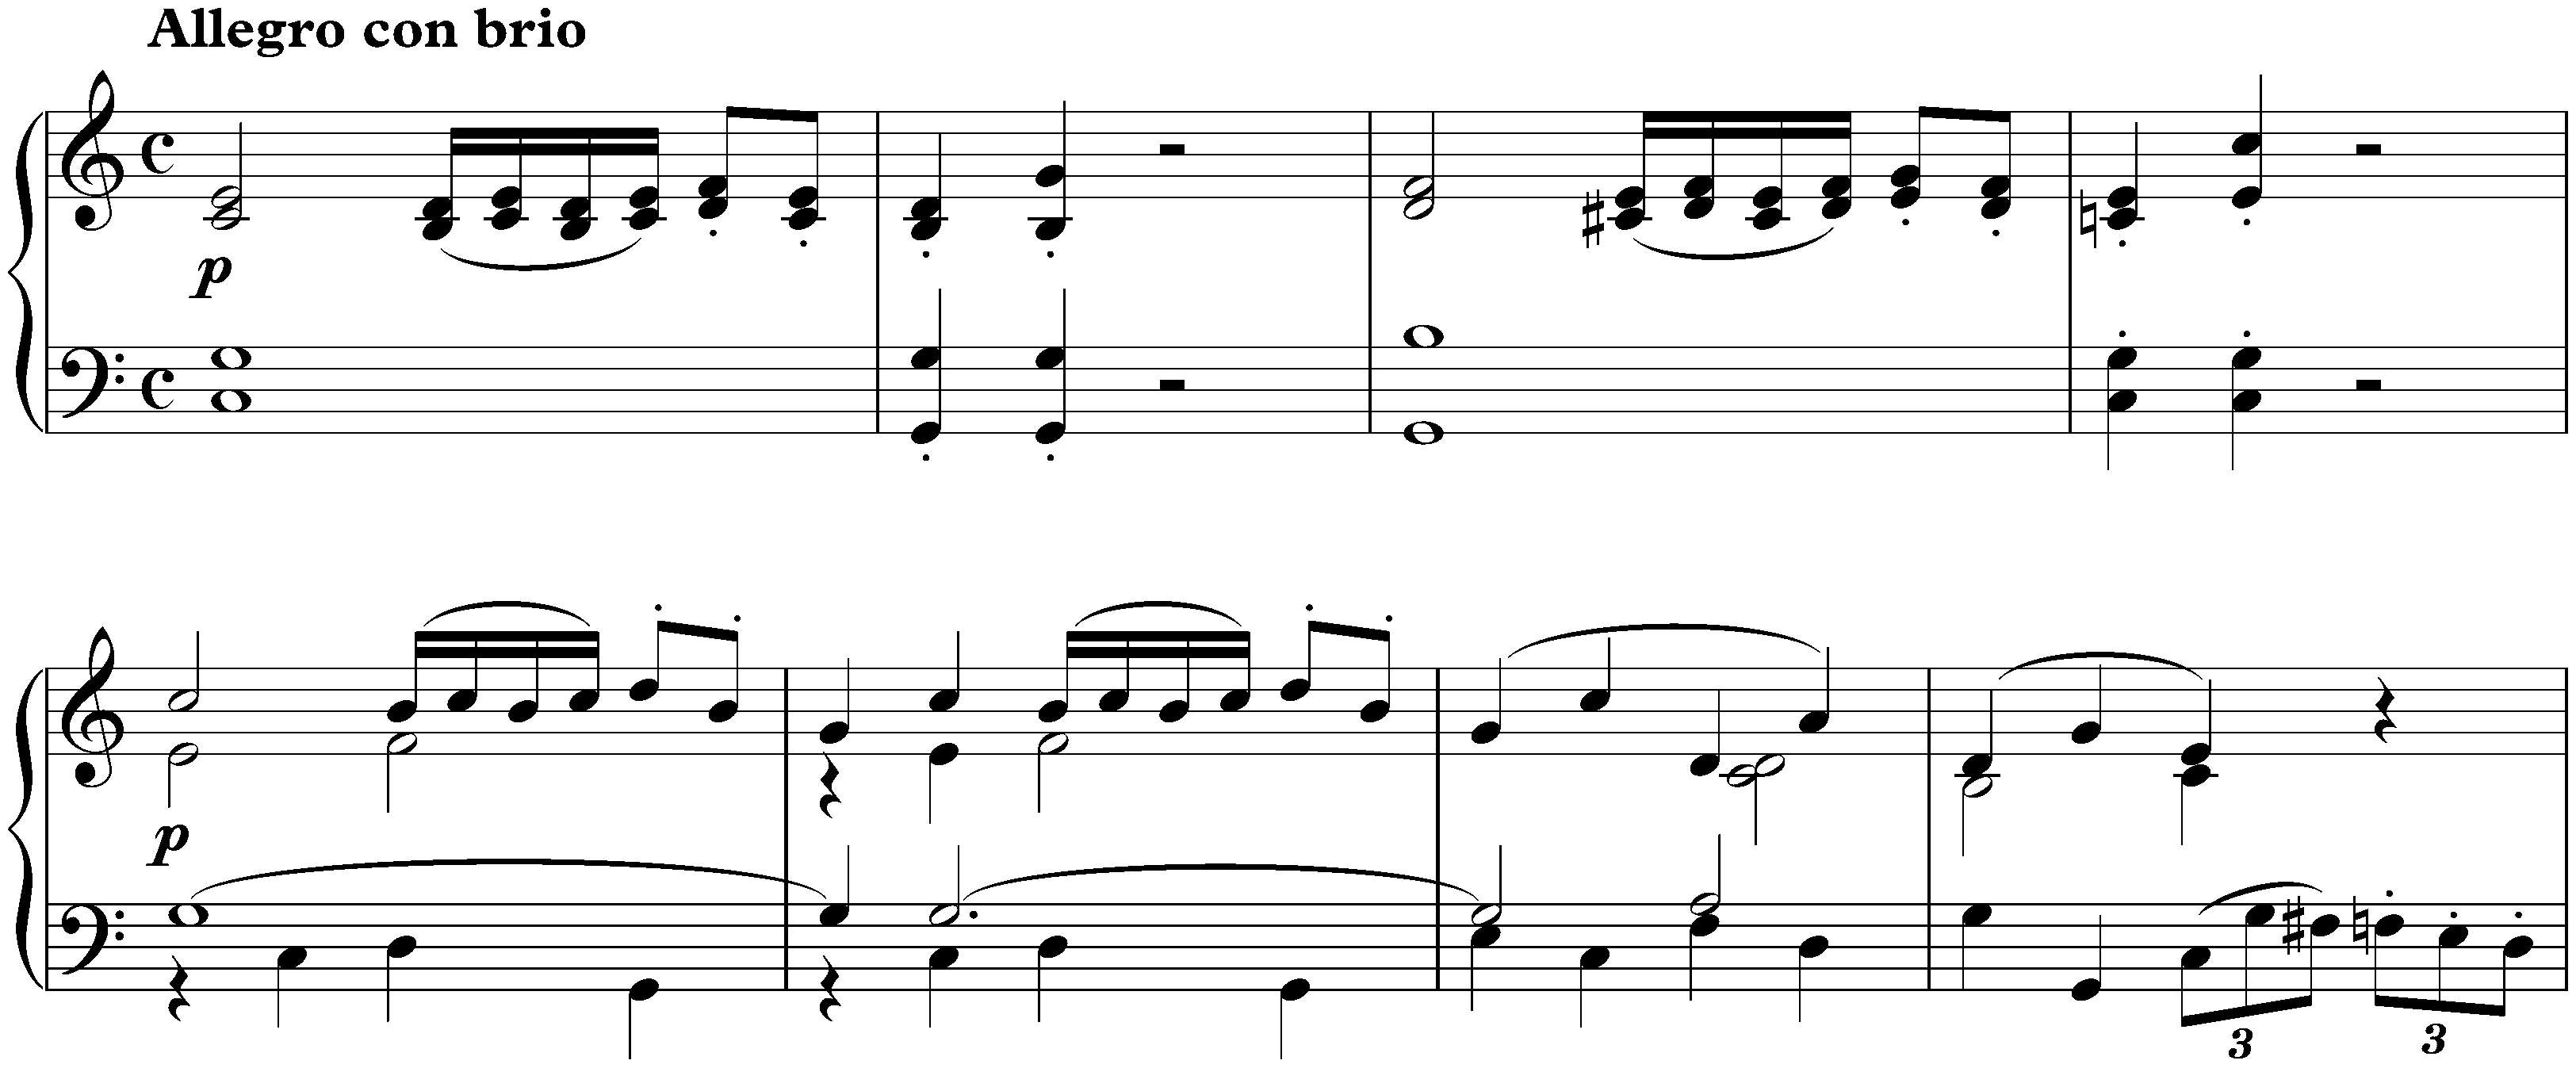 Sonata no. 3 in C major, op. 2 no. 3; 1. Allegro con brio